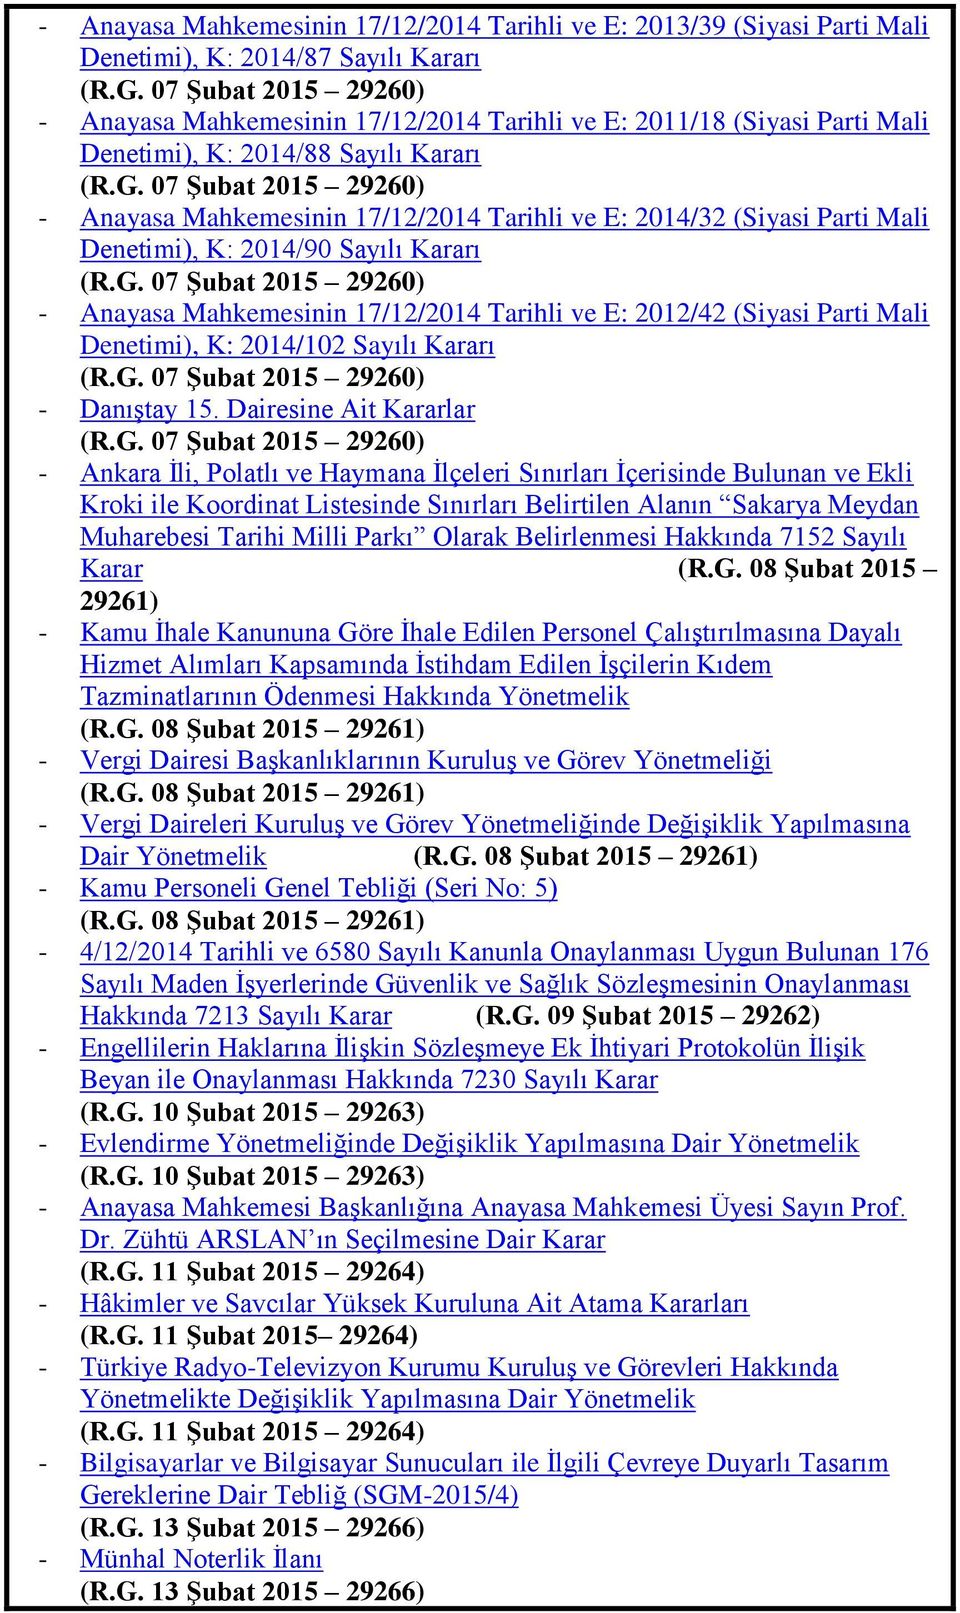 07 ġubat 2015 29260) - Anayasa Mahkemesinin 17/12/2014 Tarihli ve E: 2014/32 (Siyasi Parti Mali Denetimi), K: 2014/90 Sayılı Kararı (R.G.